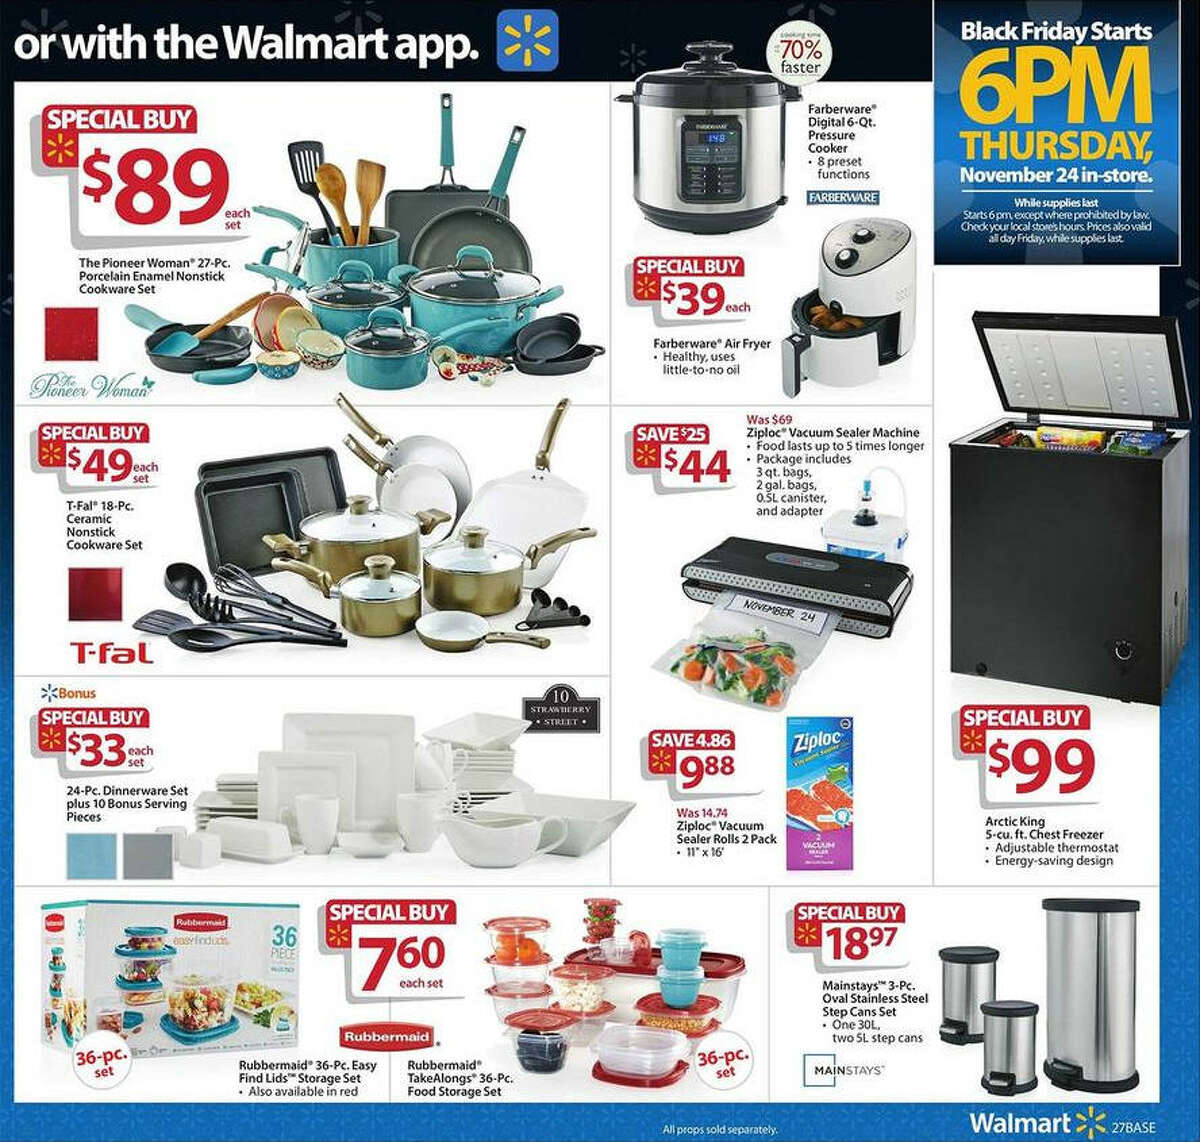 Walmart's Black Friday 2016 Doorbuster ad circular released